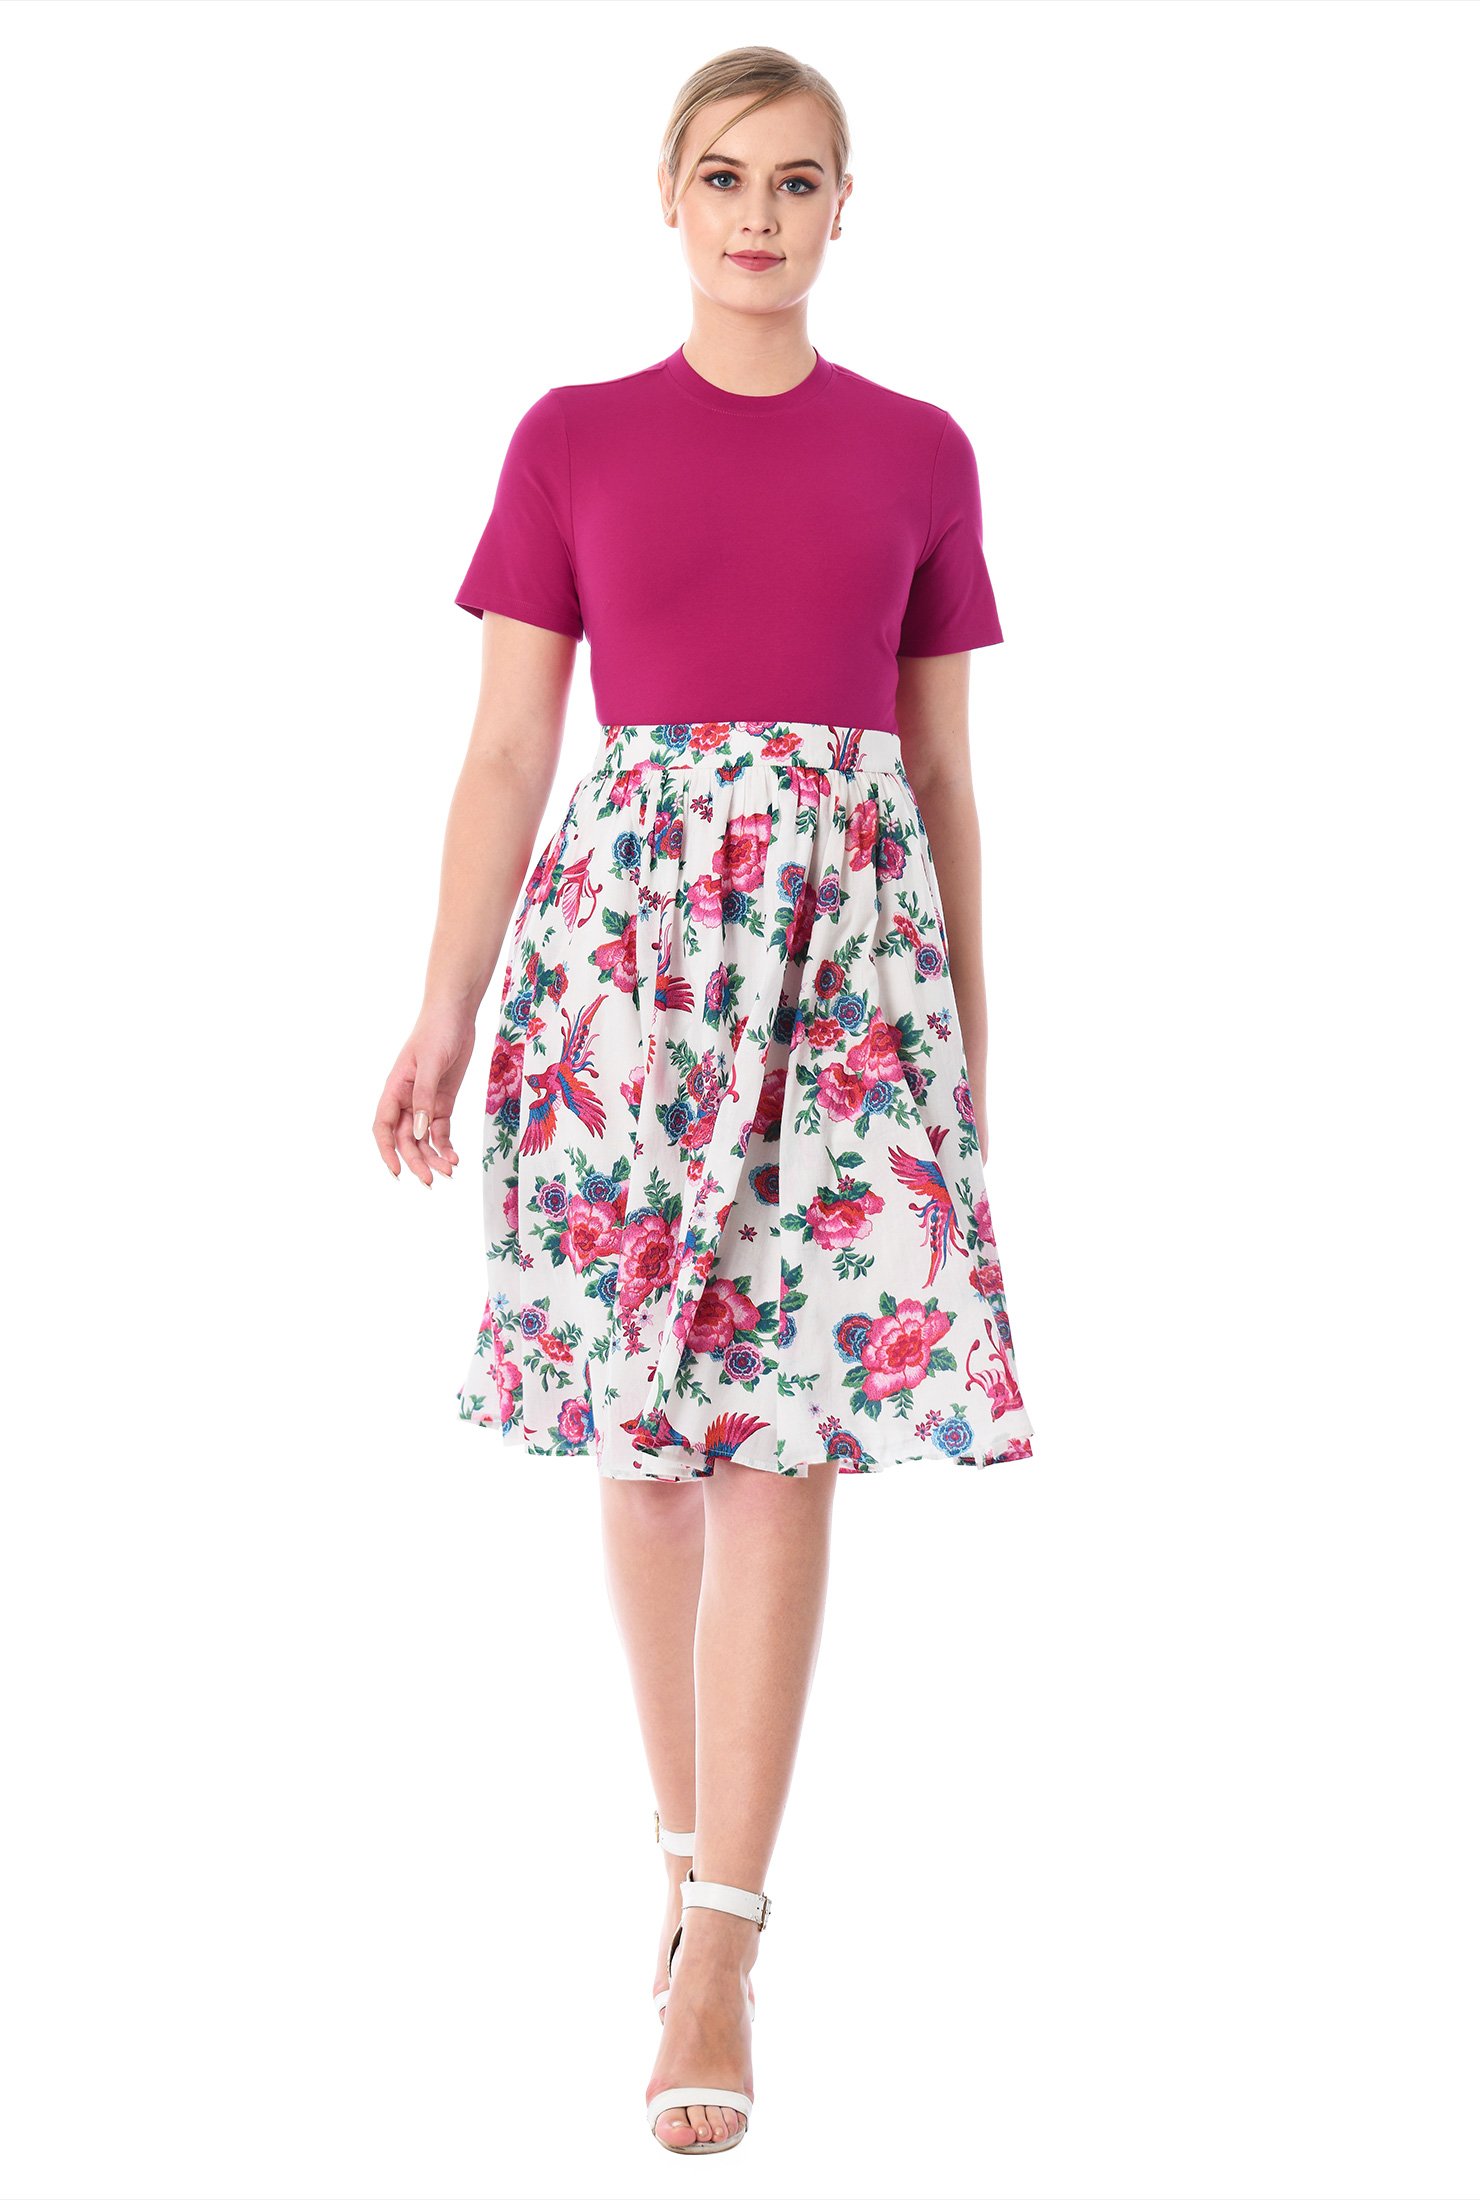 Shop Cotton knit top and floral bird print voile skirt | eShakti